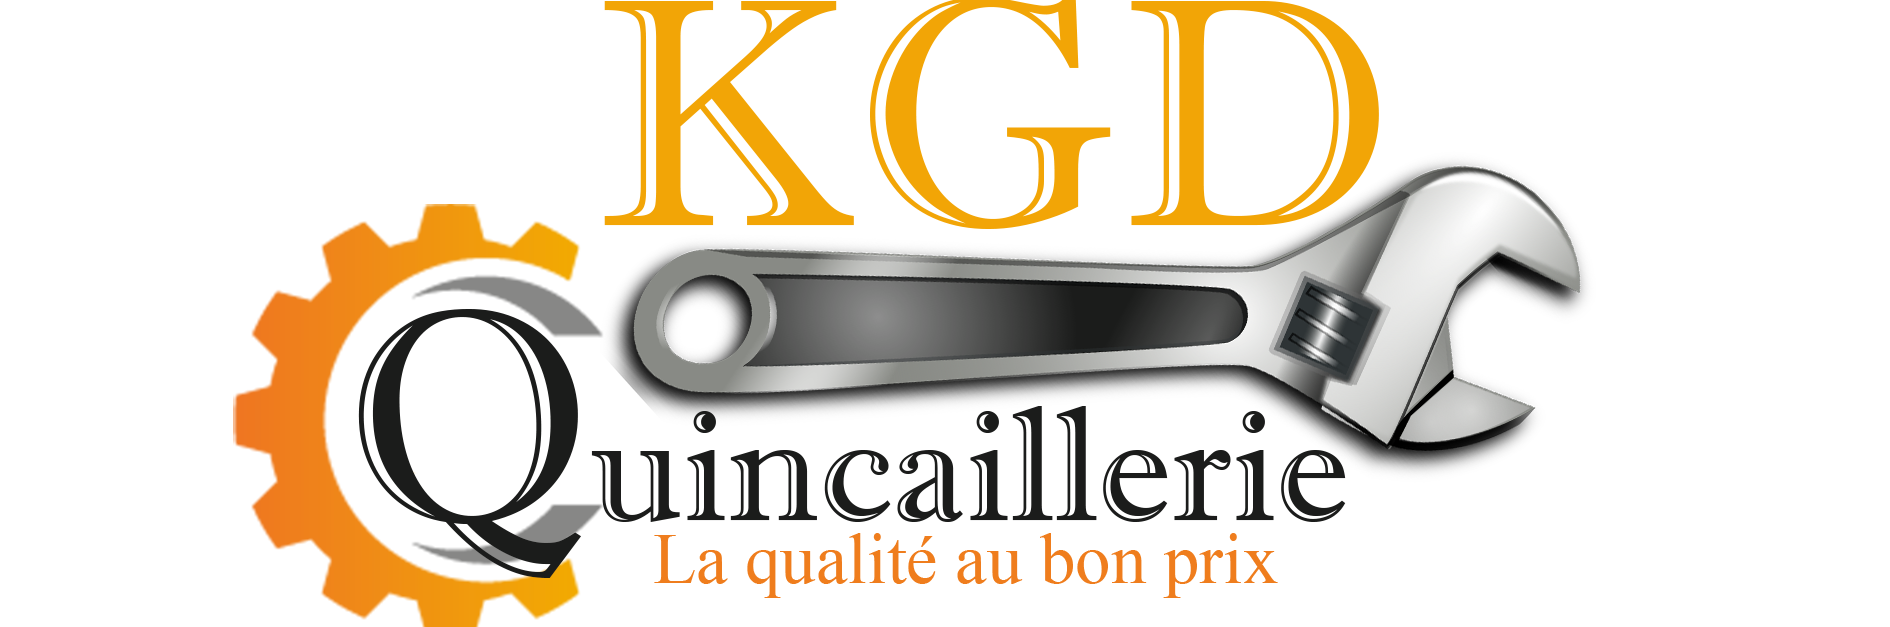 KGD Quincaillerie